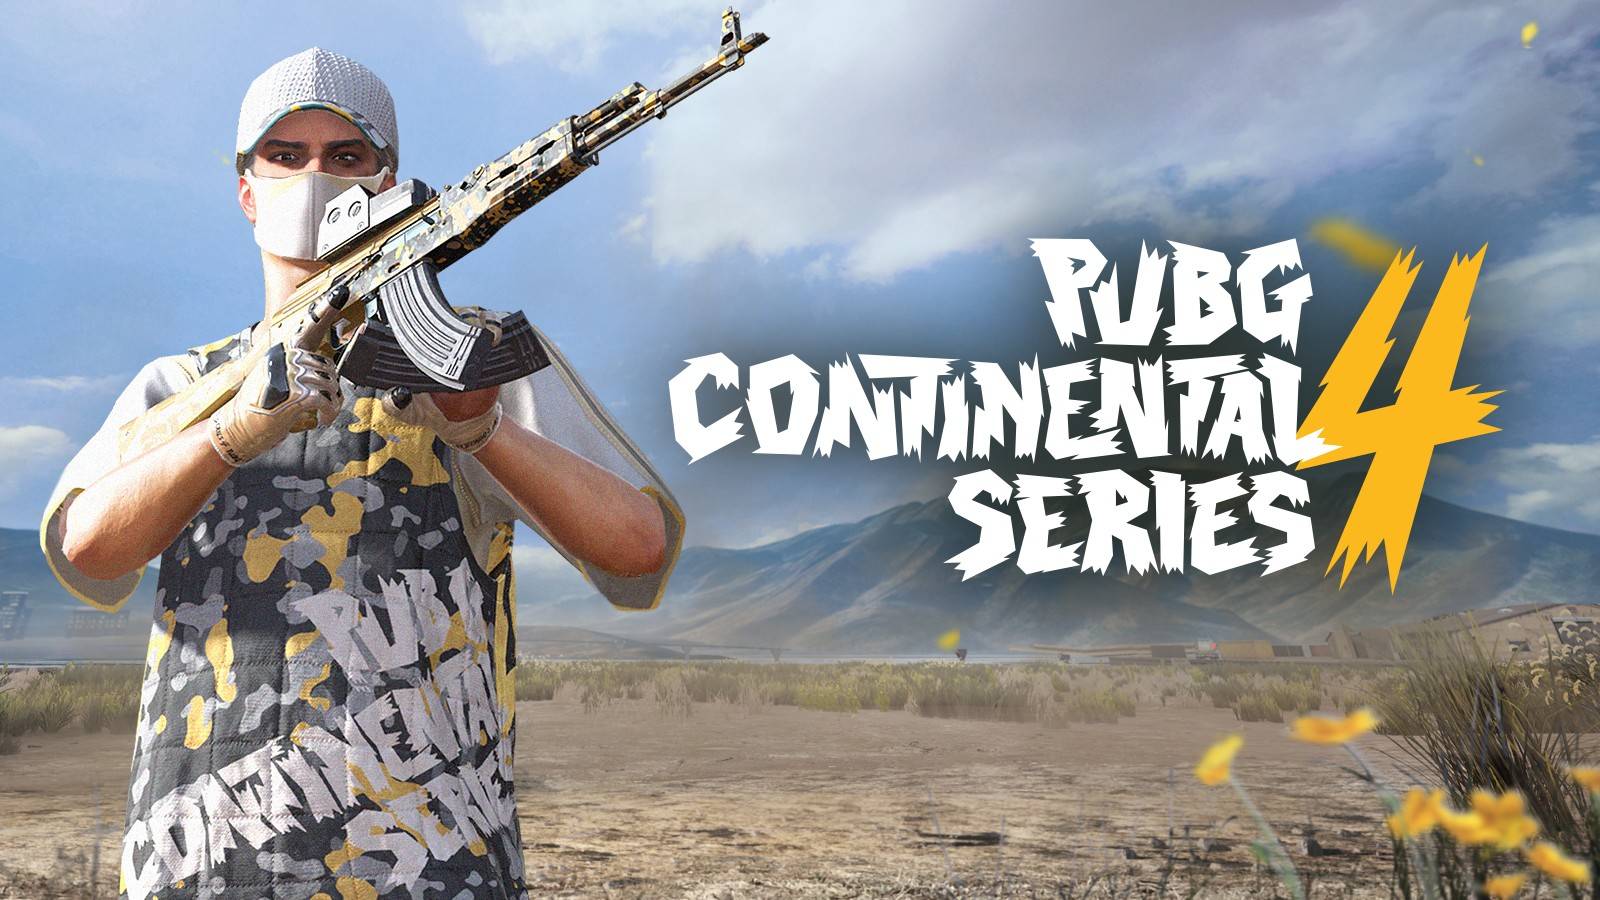 La PUBG Continental Series 4 (PCS4)  se encuentra en sus últimas semanas, las cuales nos brindarán la oportunidad de disfrutar de los 16 mejores equipos del continente y mucha diversión que vendrá acompañada de intentas partidas. Te compartimos más detalles.